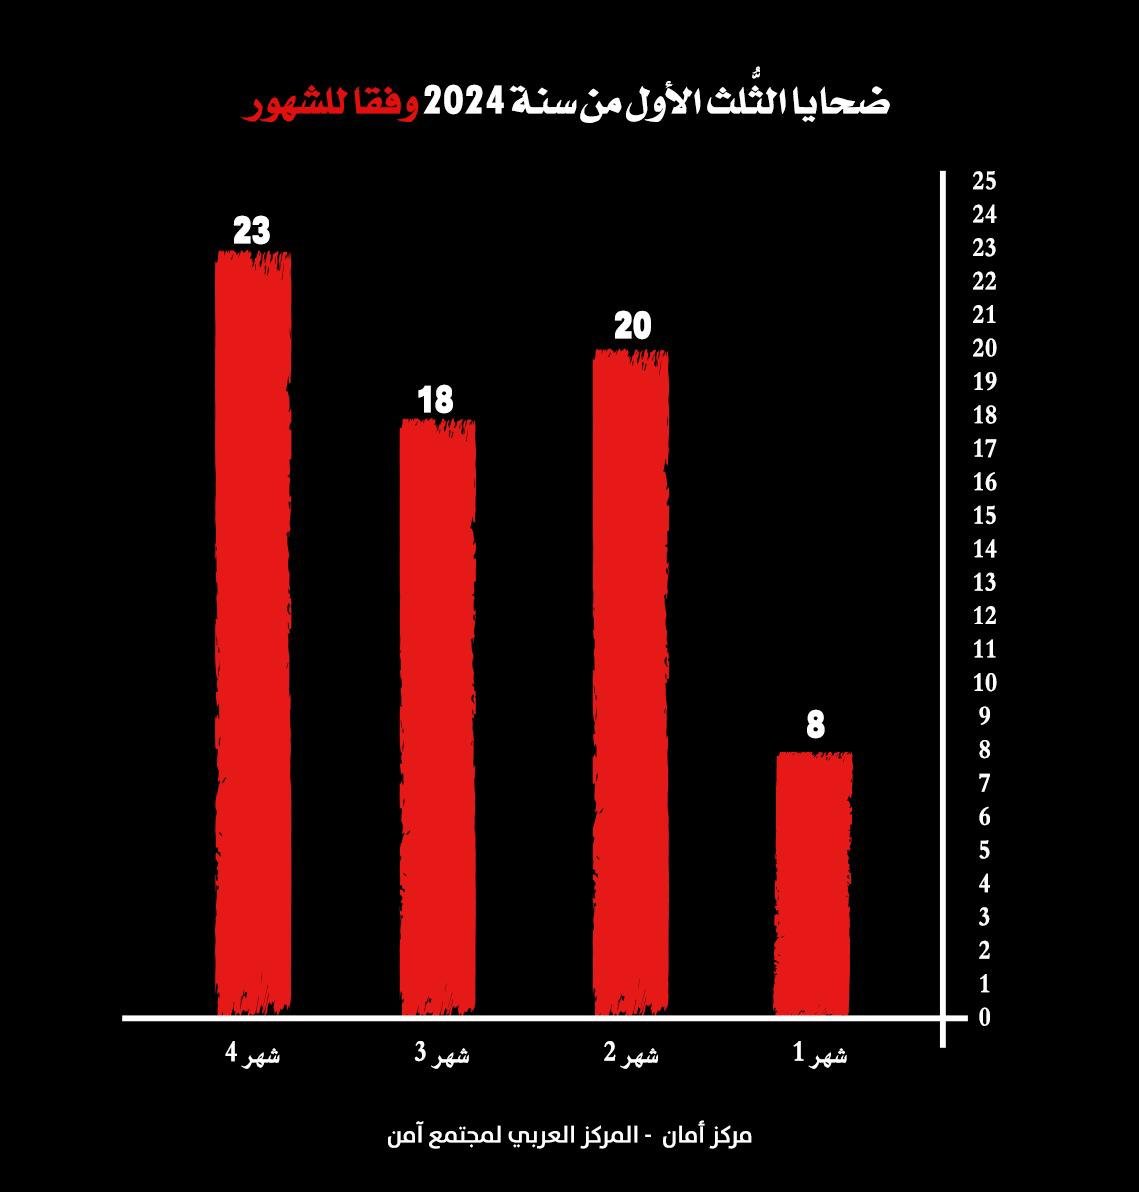 مركز أمان: الثلث الأول لعام 2024 هو الأعلى في أعداد ضحايا الجريمة والعنف في المجتمع العربي: 69 ضحية-1